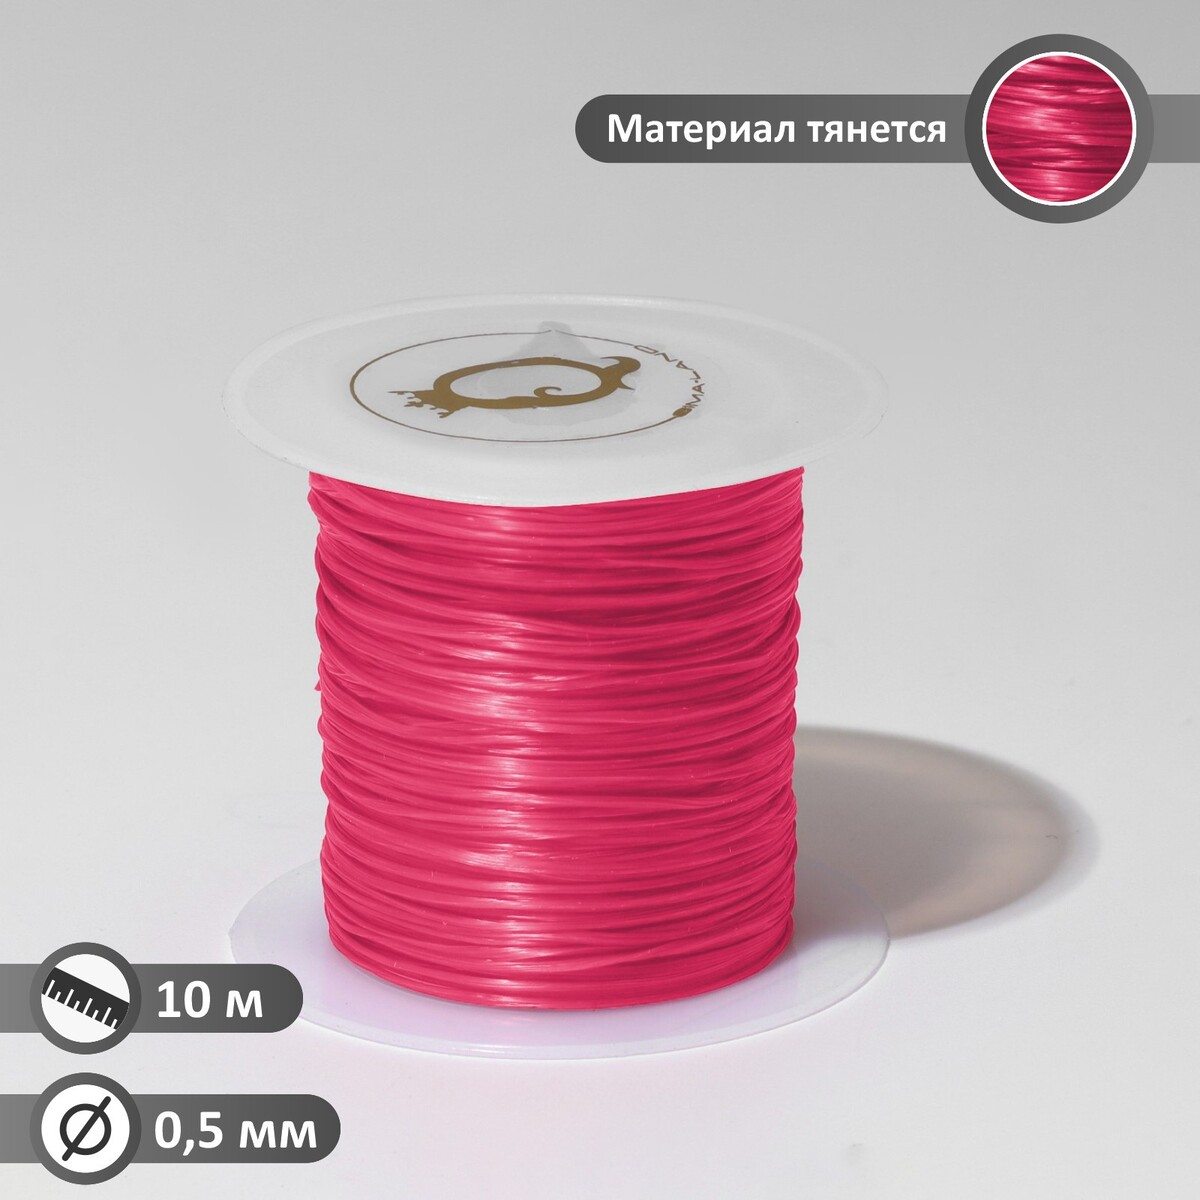 Нить силиконовая (резинка) d=0,5 мм, l=10 м (прочность 2250 денье), цвет розовый нить силиконовая резинка d 0 5мм l 10м прочность 2250 денье светло розовый